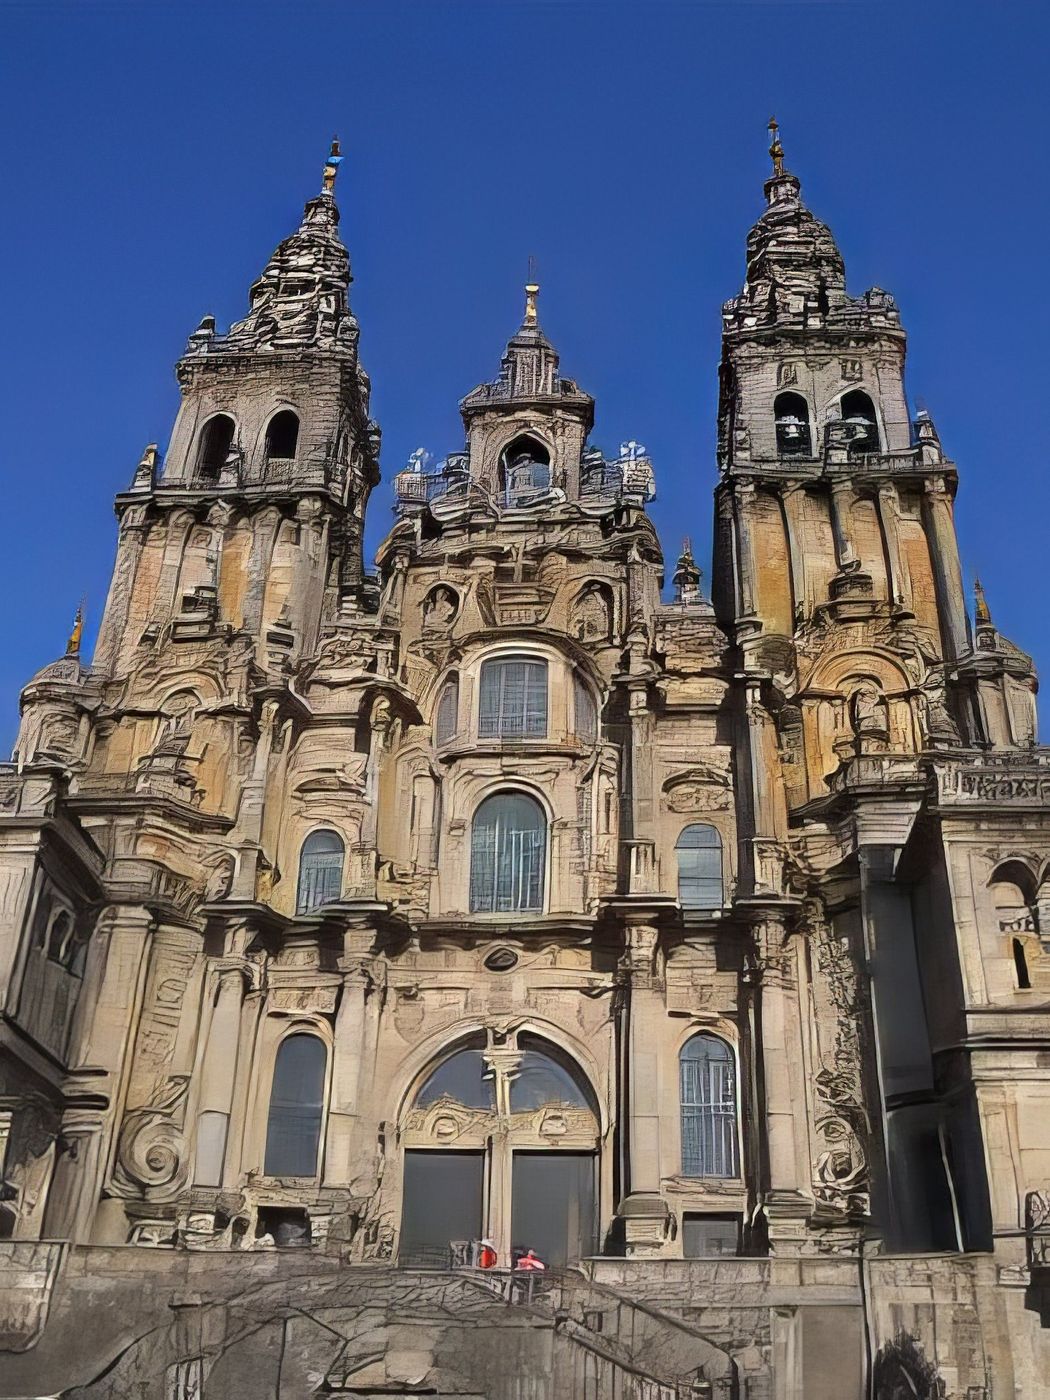 Santiago de Compostela (Saint-Jacques-de-Compostelle)